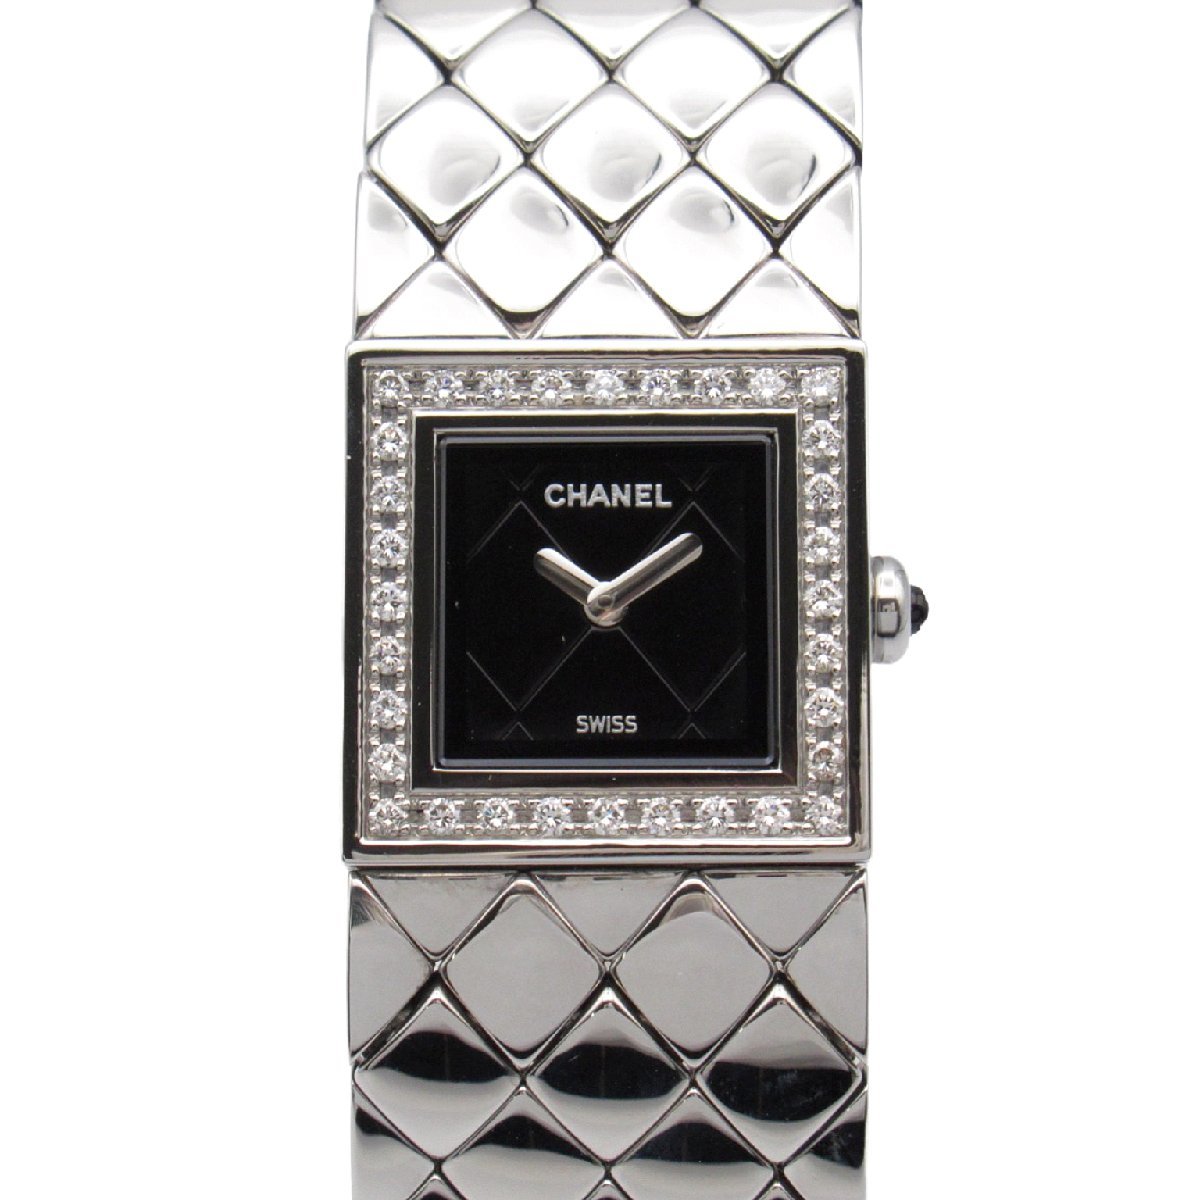 CHANEL シャネル 腕時計 マトラッセ ダイヤベゼル ブラック系 ステンレススチール 中古 レディース